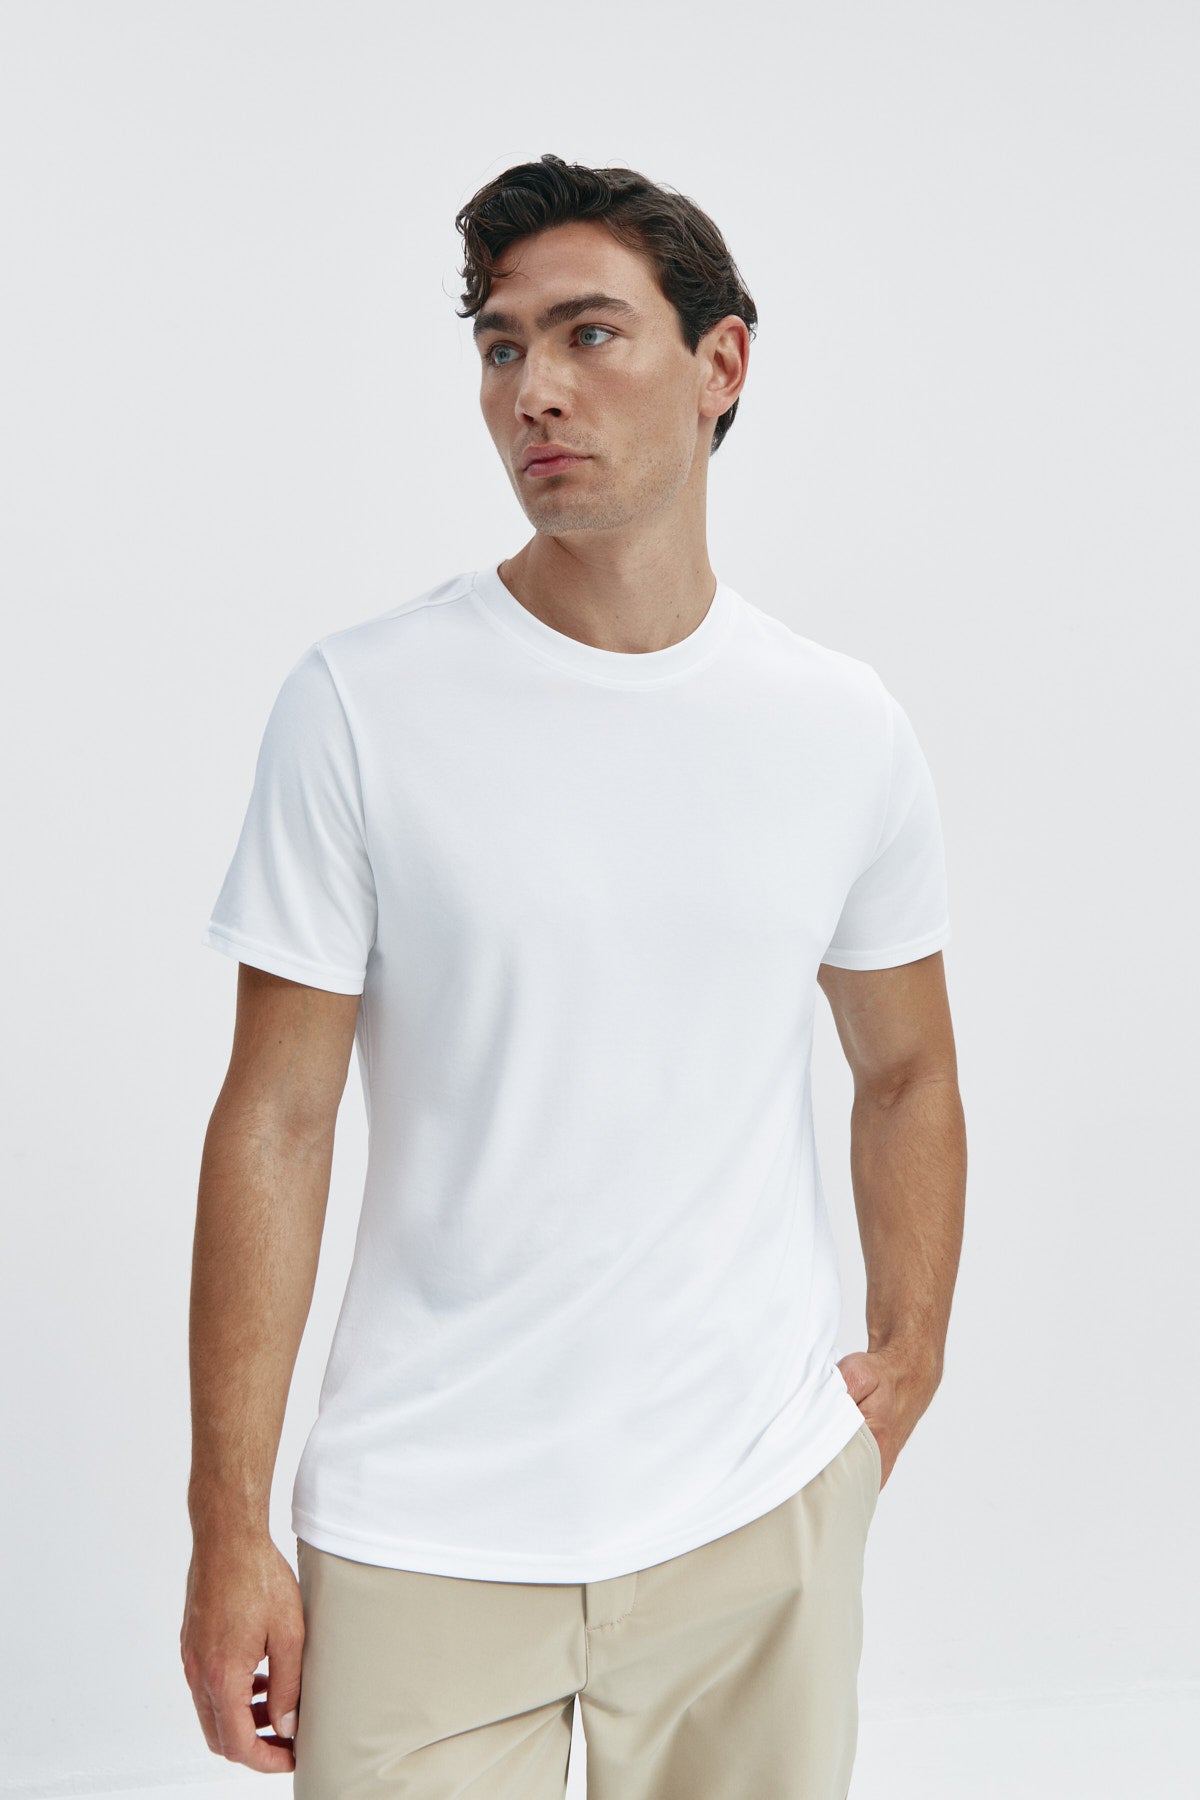 Camiseta de hombre blanca de manga corta, antiarrugas y antimanchas.Foto de frente.